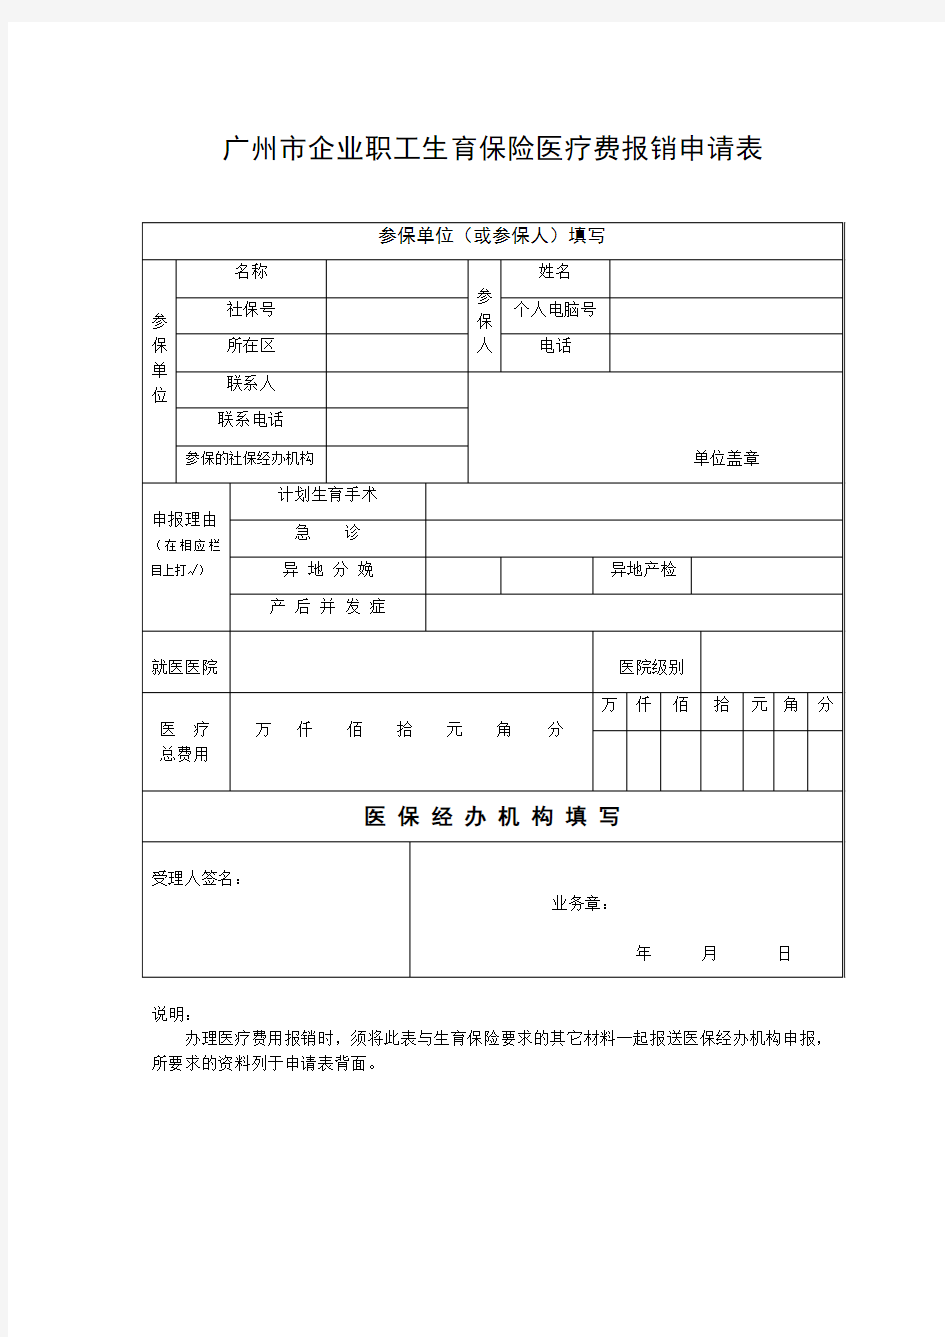 广州市企业职工生育保险医疗费报销申请表